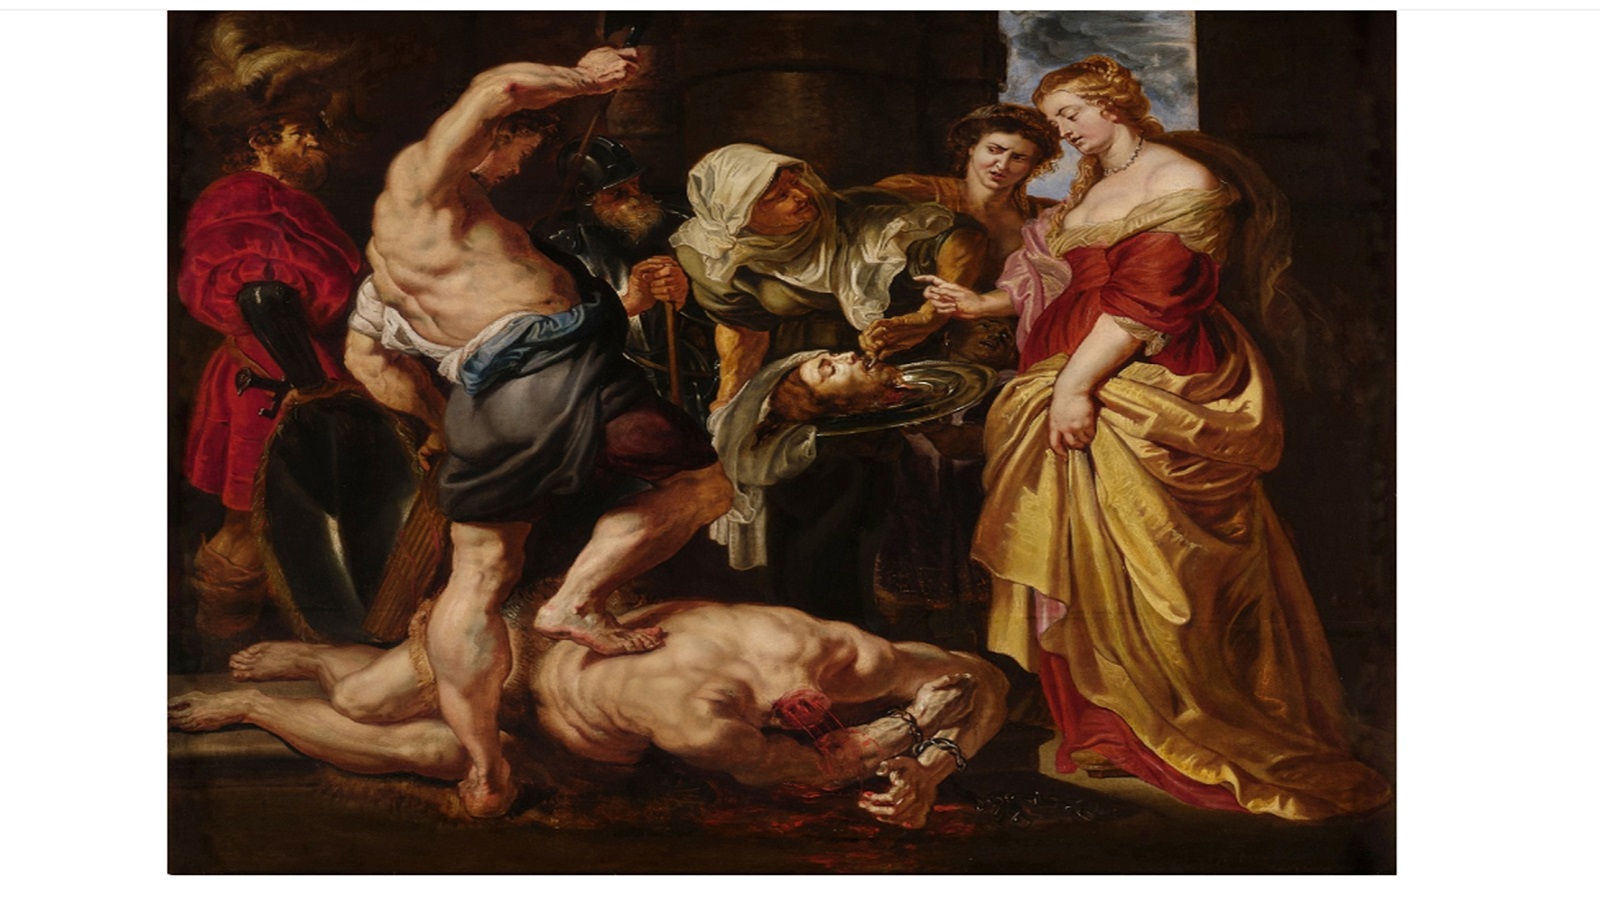  روبنس، مقتل القديس يوحنا المعمدان وتقديم راسه إلى سالومي، 1609.